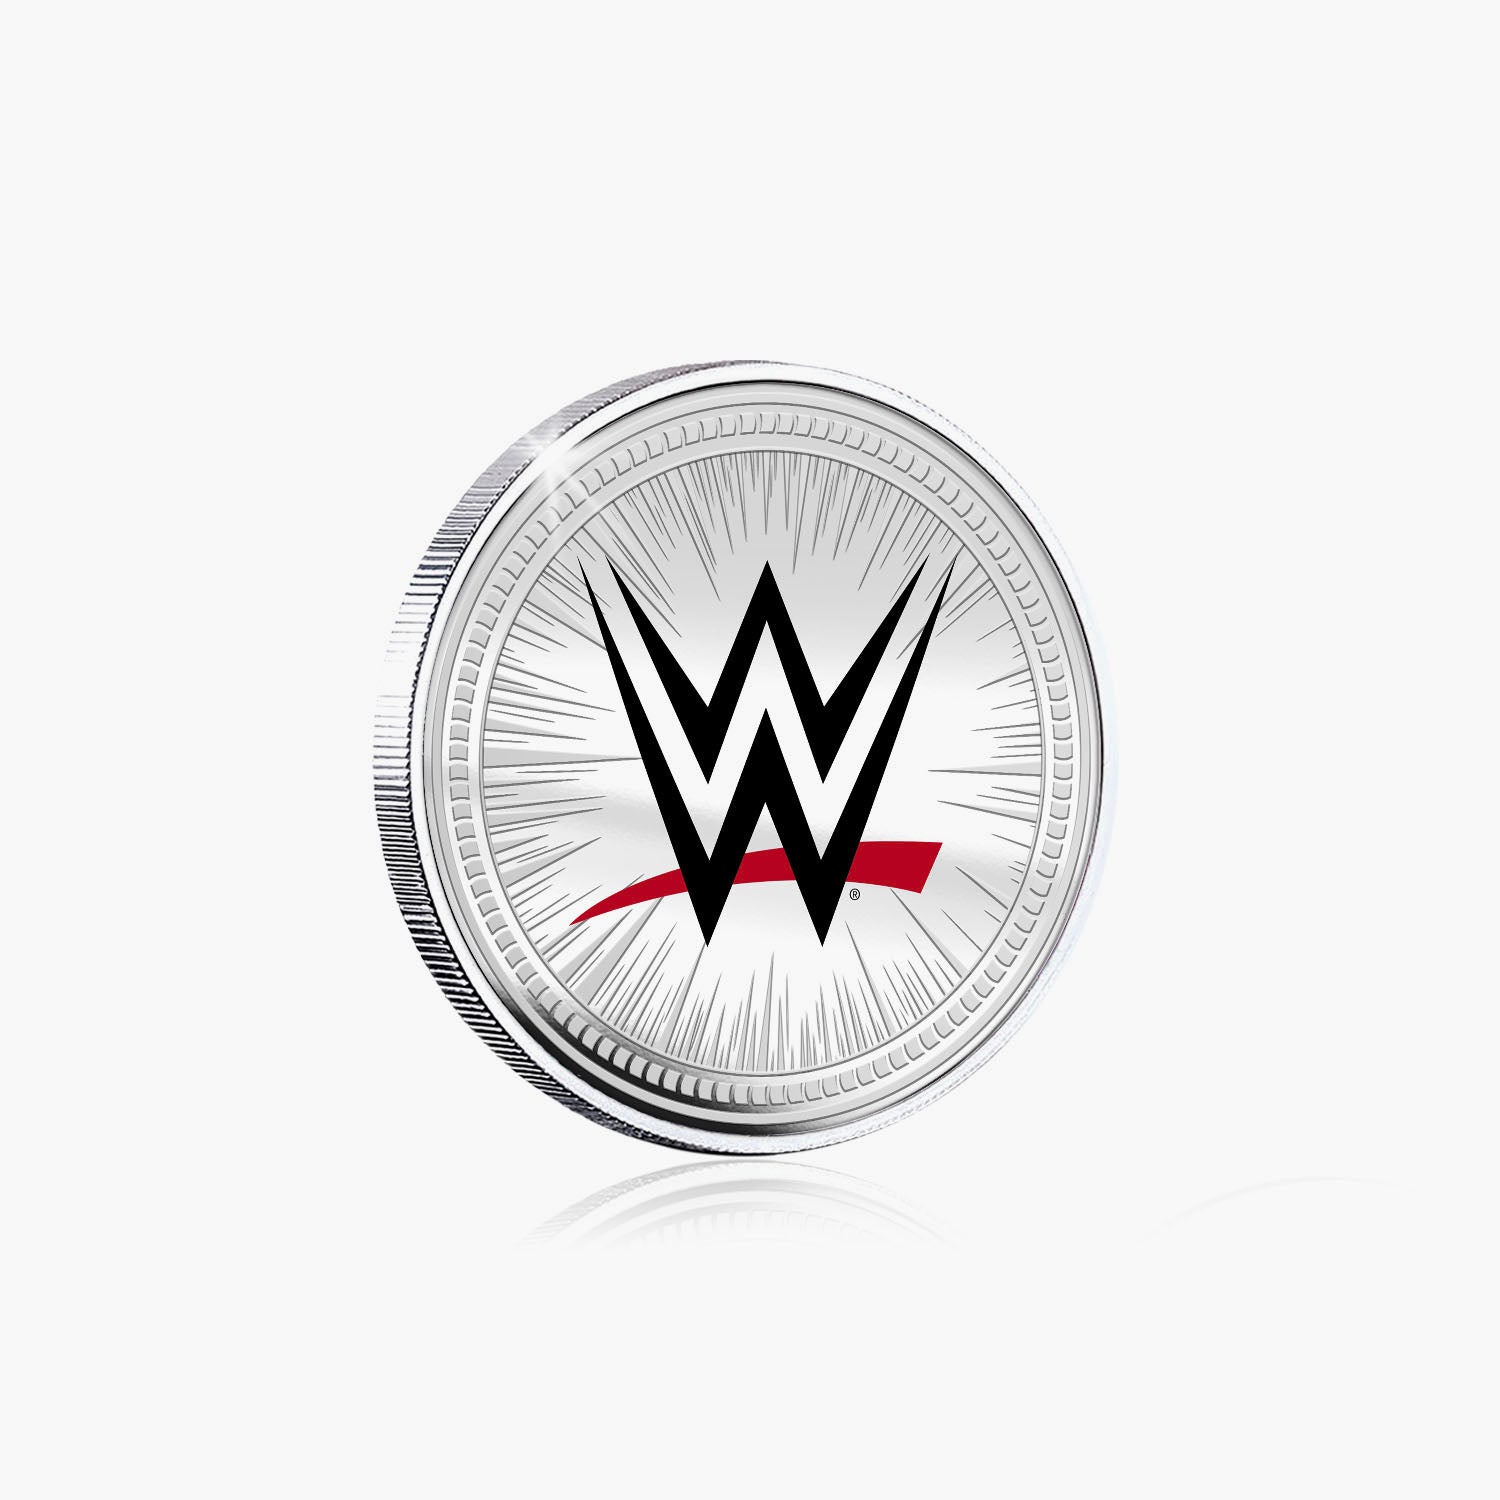 Collection commémorative WWE - Dudley Boyz - Commémorative plaquée argent 32 mm